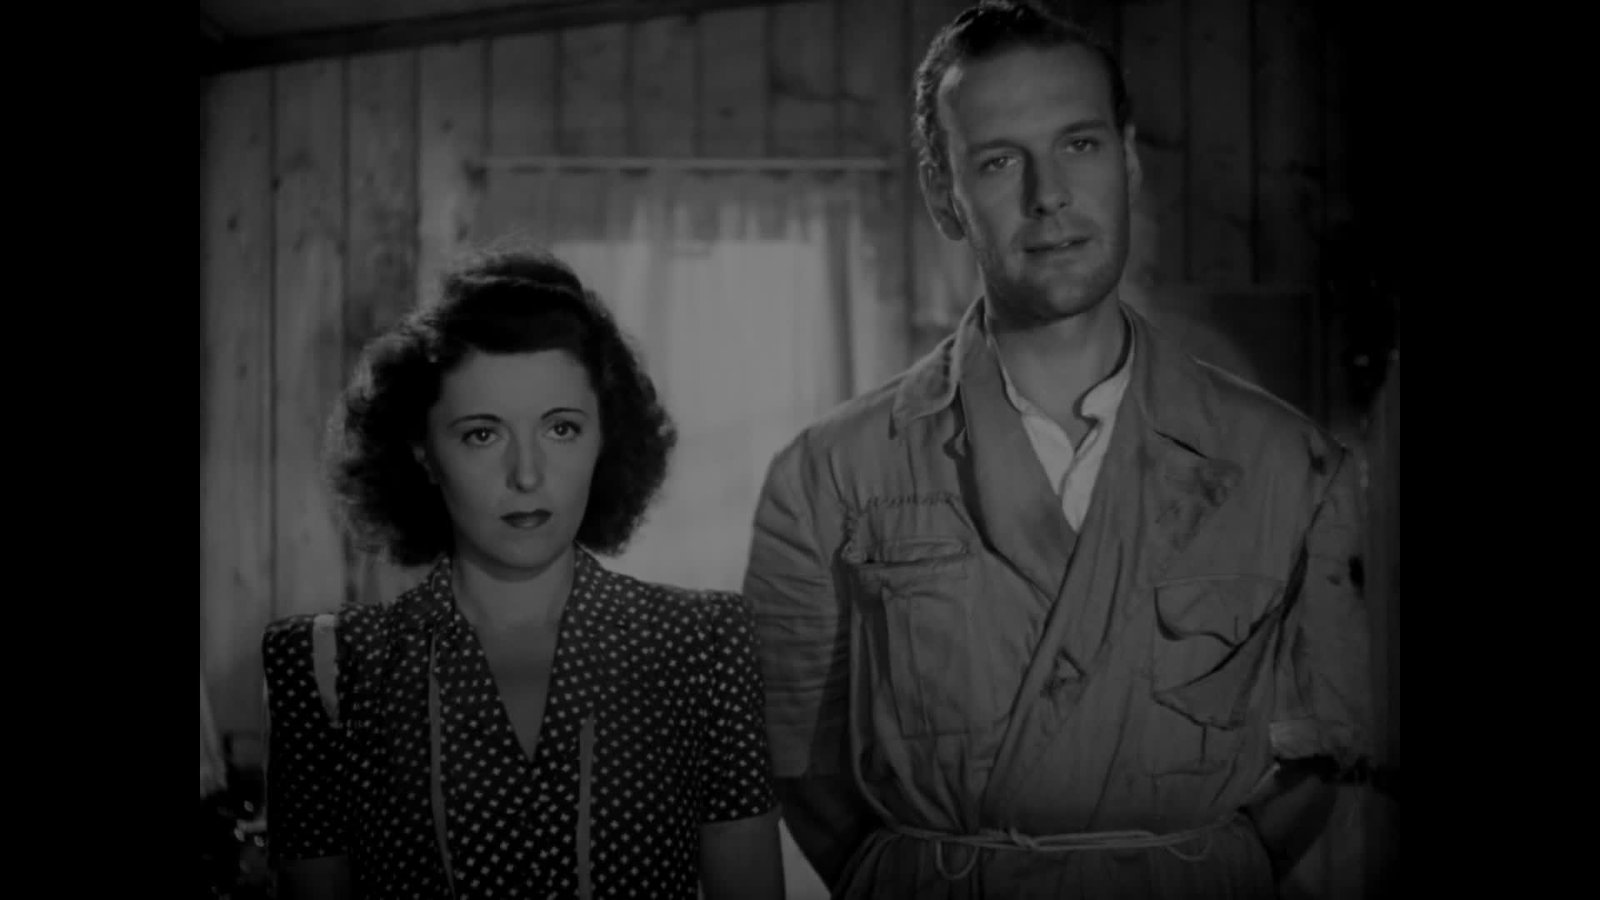 Viel Lärm um Nixi (1942) - Deutsche DVD-Premiere -  Ein Film von Erich Engel mit Jenny Jugo und  Albert Matterstock  - Limited Edition  (DVD)